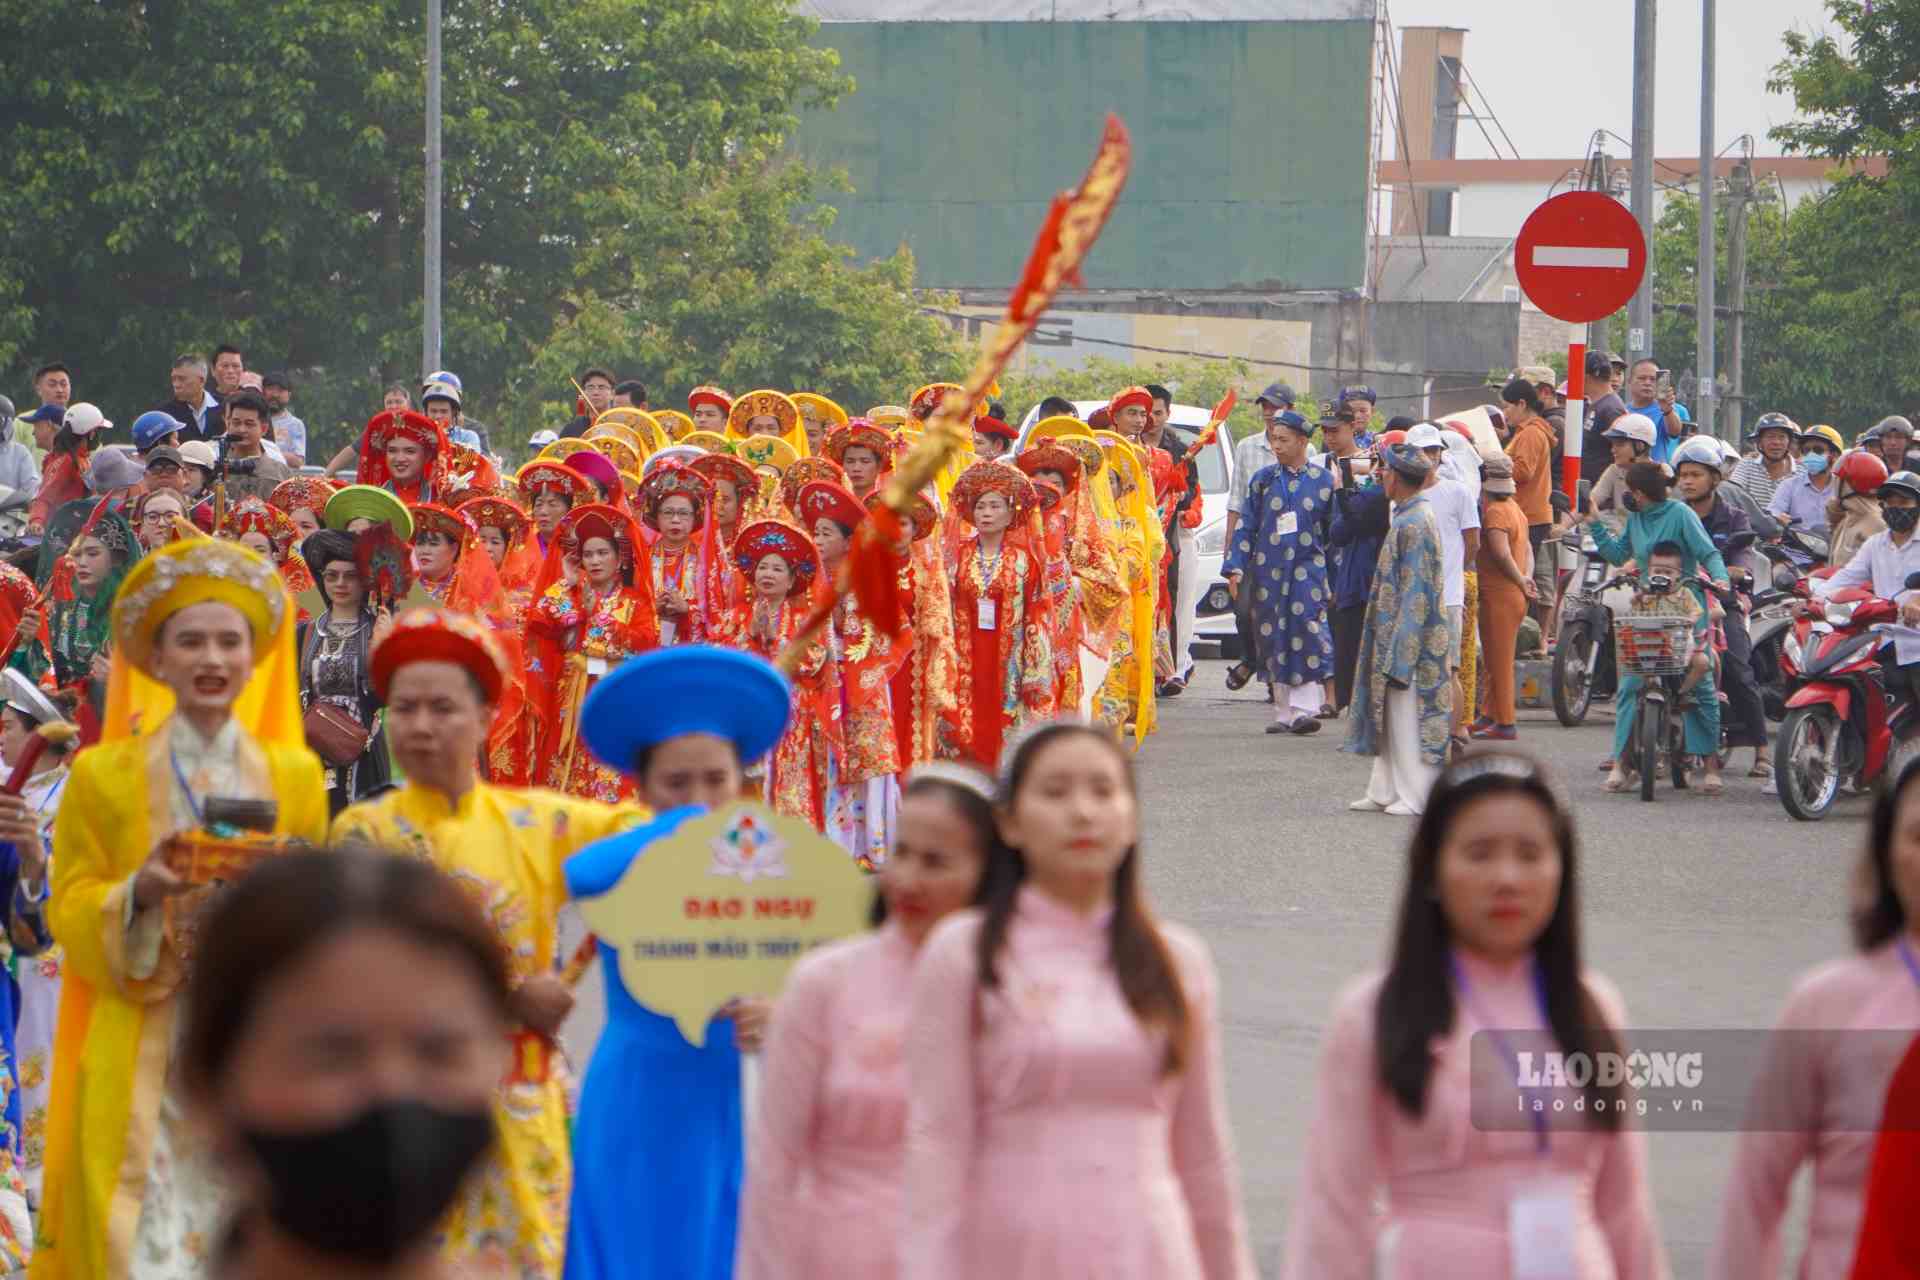 Từ sáng 10.4, lễ rước Thánh bằng đường bộ là hoạt động mở đầu lễ hội. Đoàn rước đường bộ di chuyển đoạn đường dài 3km từ 352 Chi Lăng đến Nghinh Lương Đình và làm lễ. 